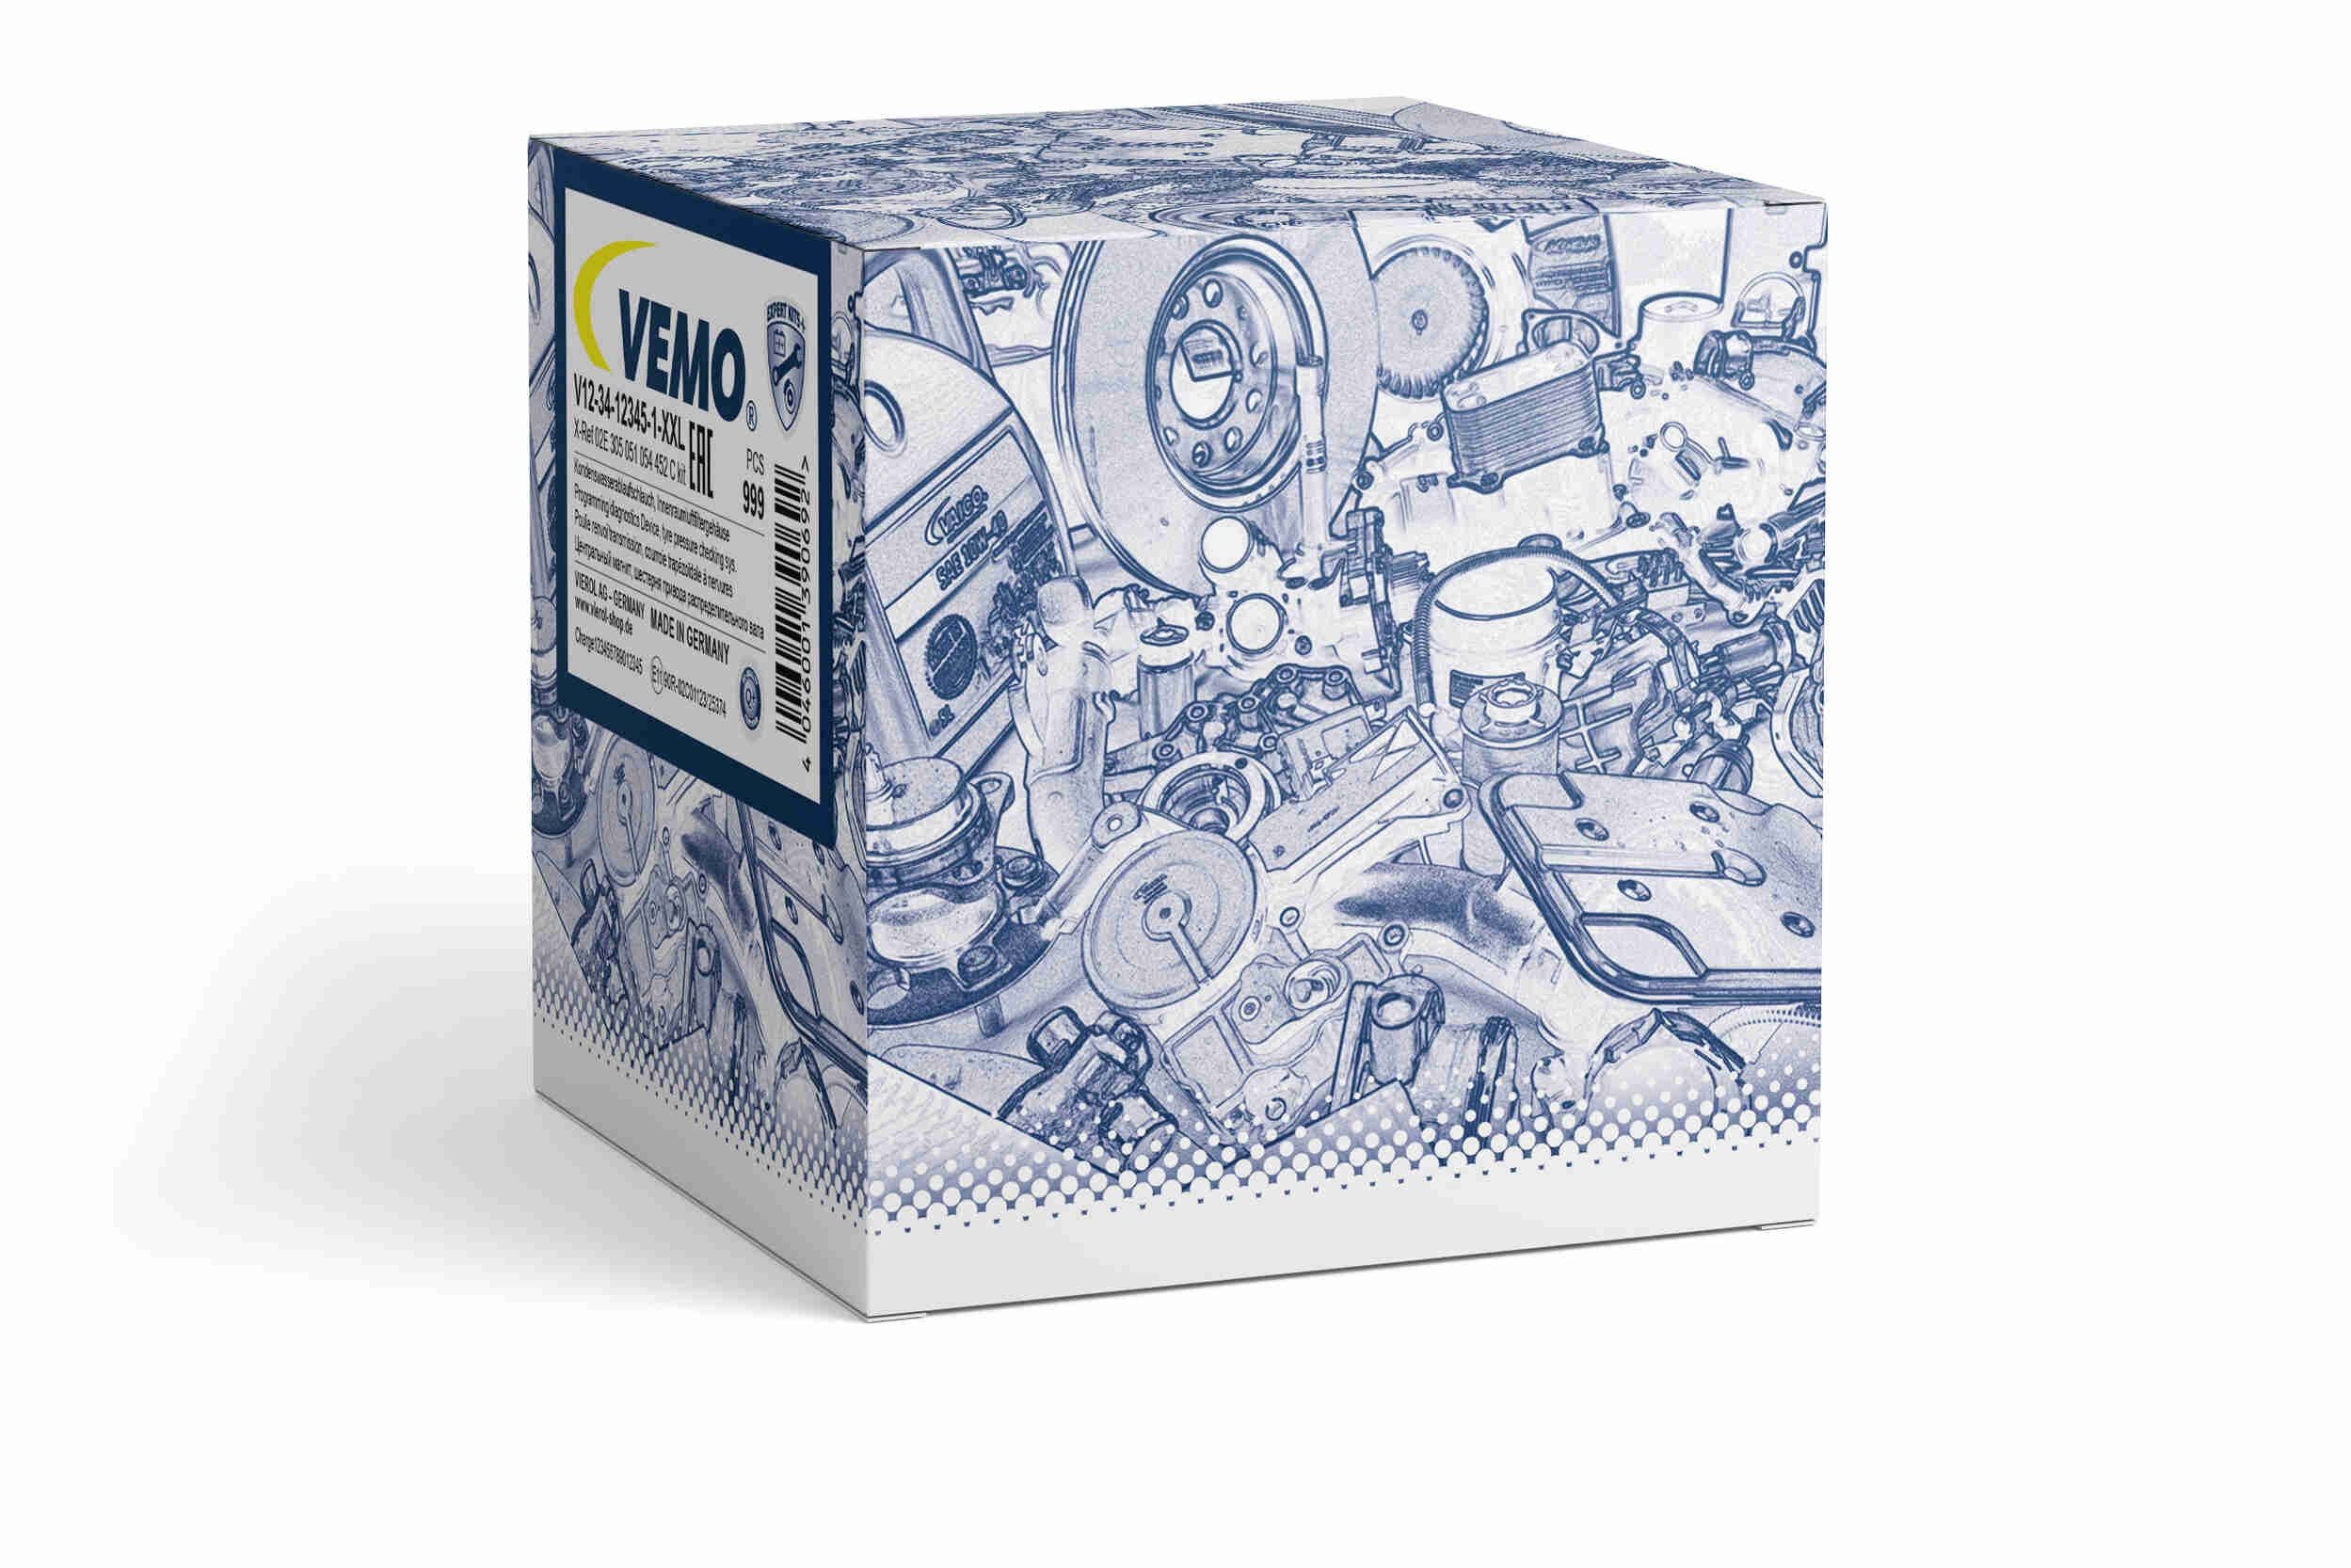 VEMO VEV10-72-1444 - 6RA959 Clockspring, airbag Q+, original equipment manufacturer quality